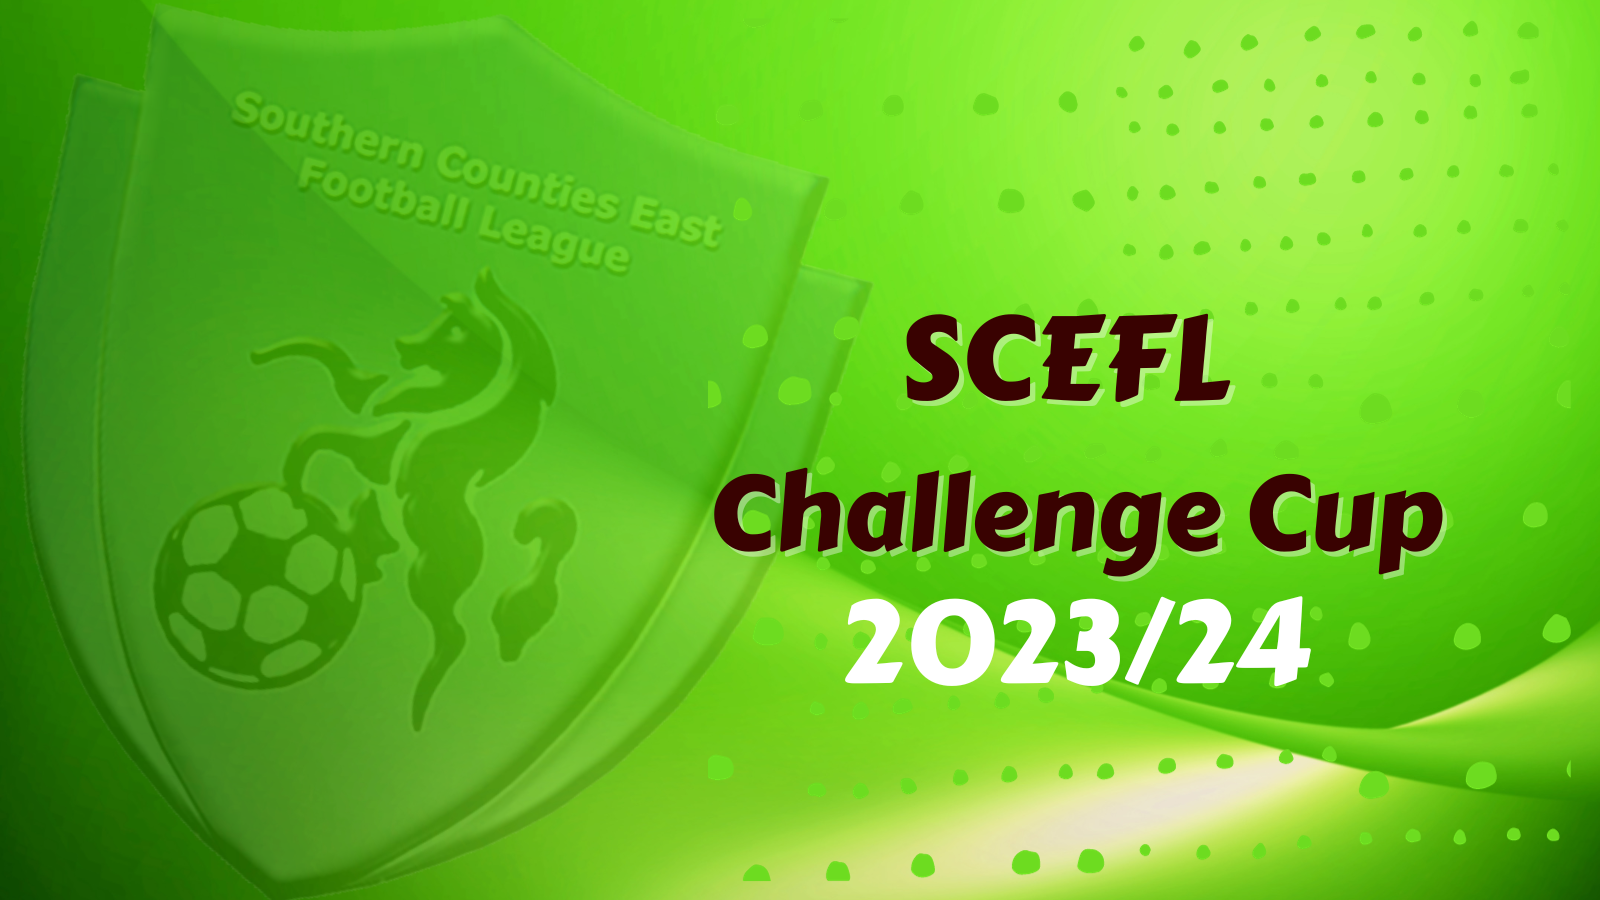 SCEFL Challenge Cup - 2023/24